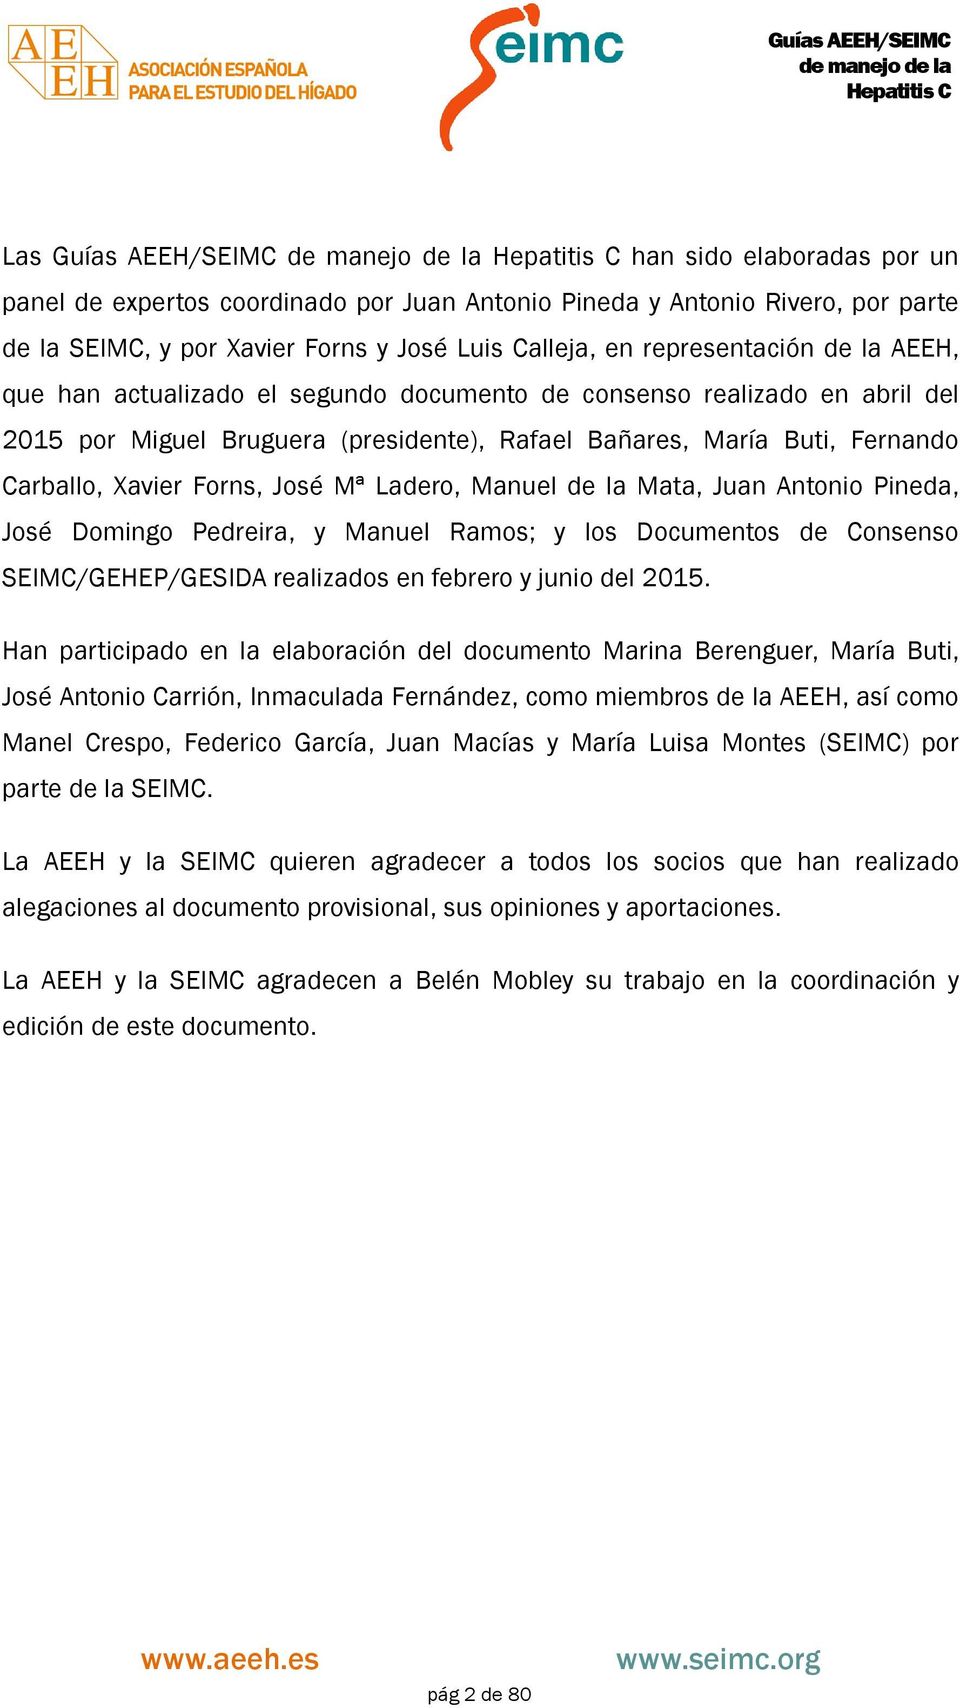 Ladero, Manuel de la Mata, Juan Antonio Pineda, José Domingo Pedreira, y Manuel Ramos; y los Documentos de Consenso SEIMC/GEHEP/GESIDA realizados en febrero y junio del 2015.